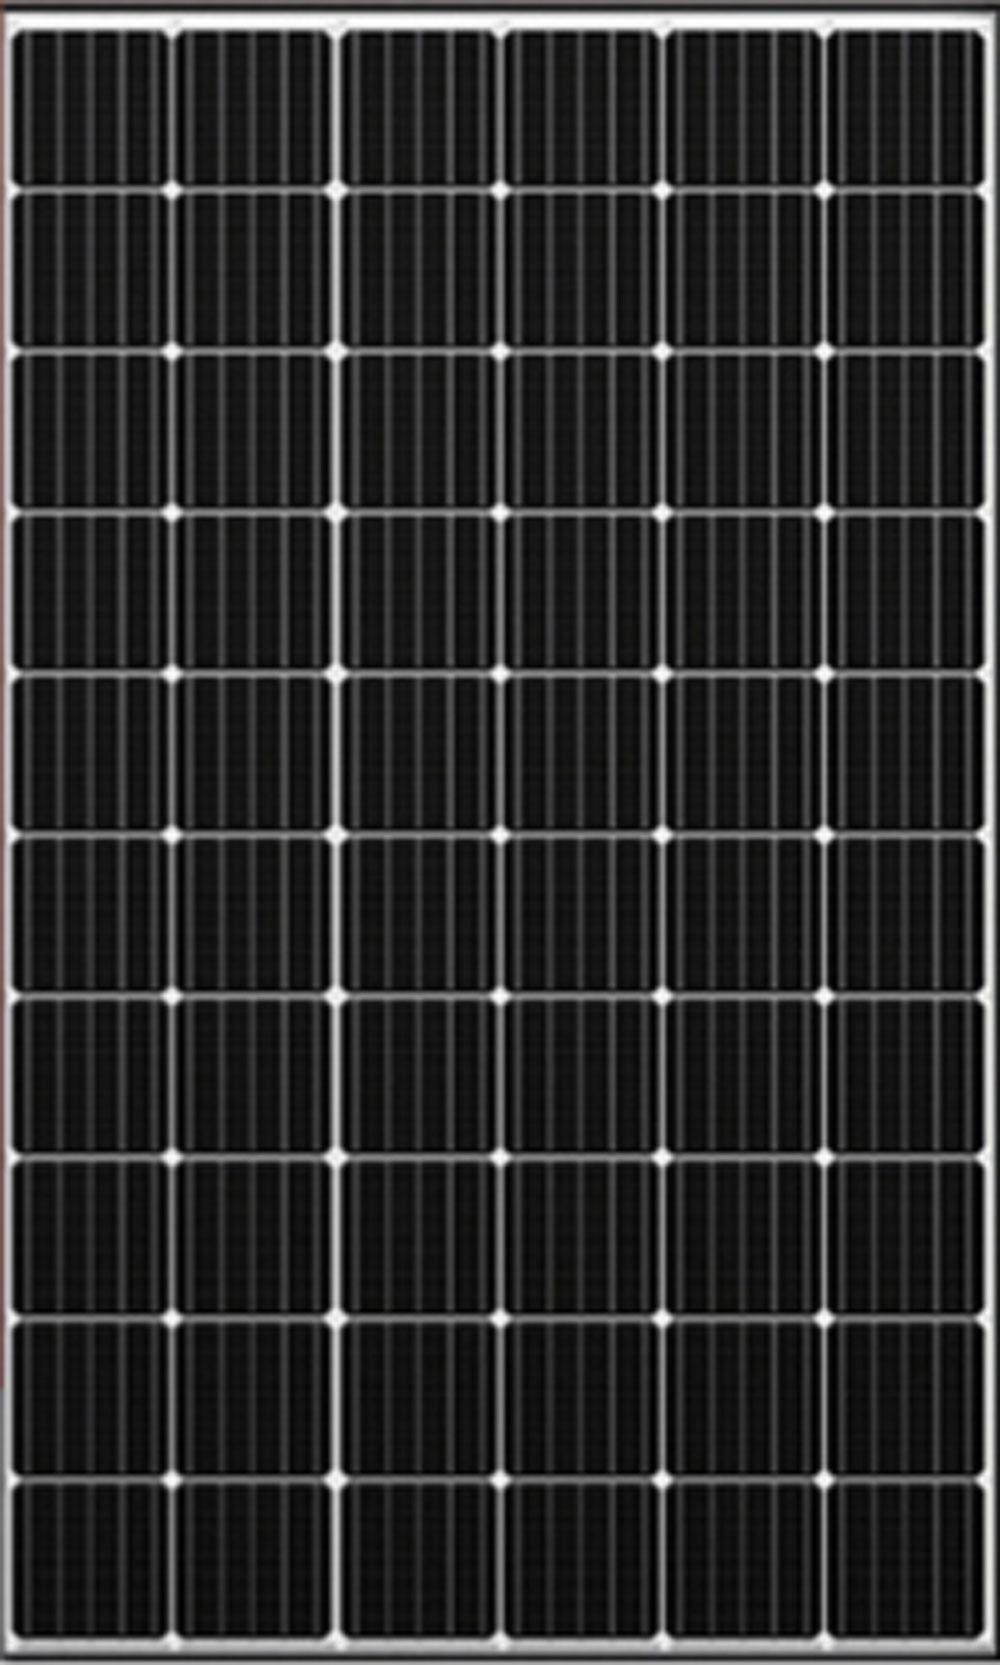 Pannello Solare Fotovoltaico 30W 12V Camper Barca Baita Monoscristallino